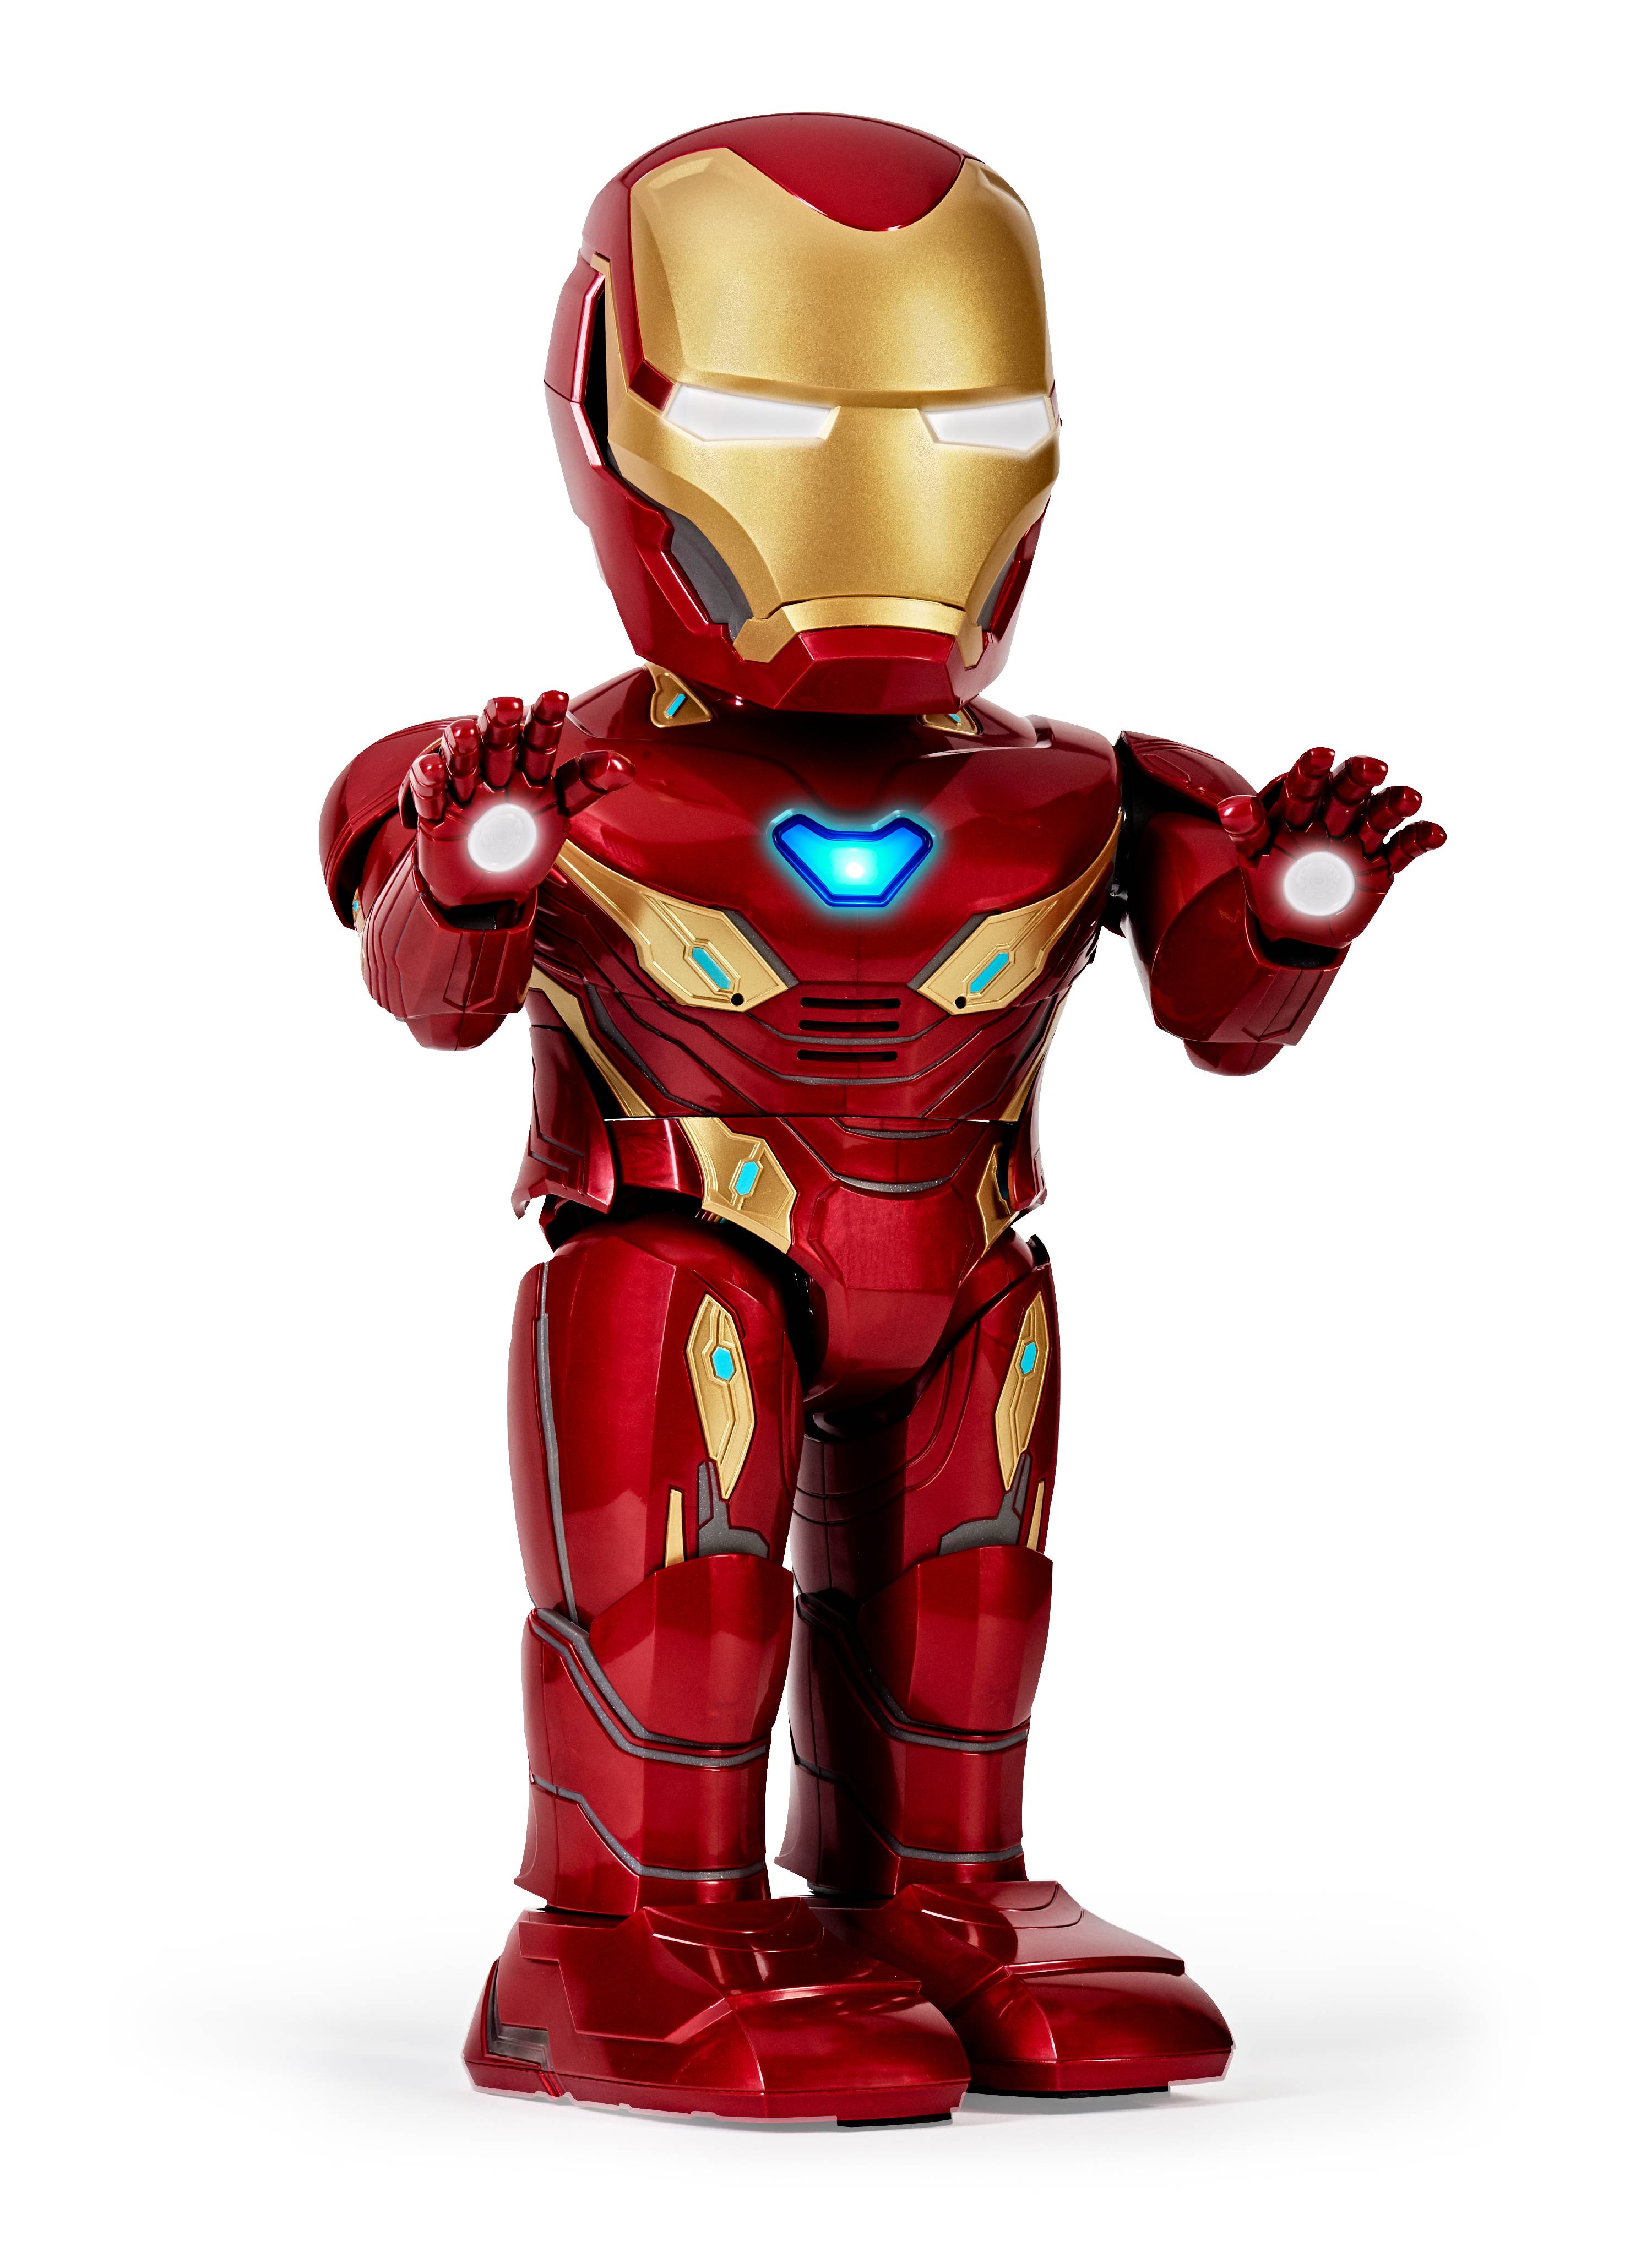 Buy UBTECH Marvel Avengers Endgame Iron Man Mk20 Robot Online in ...